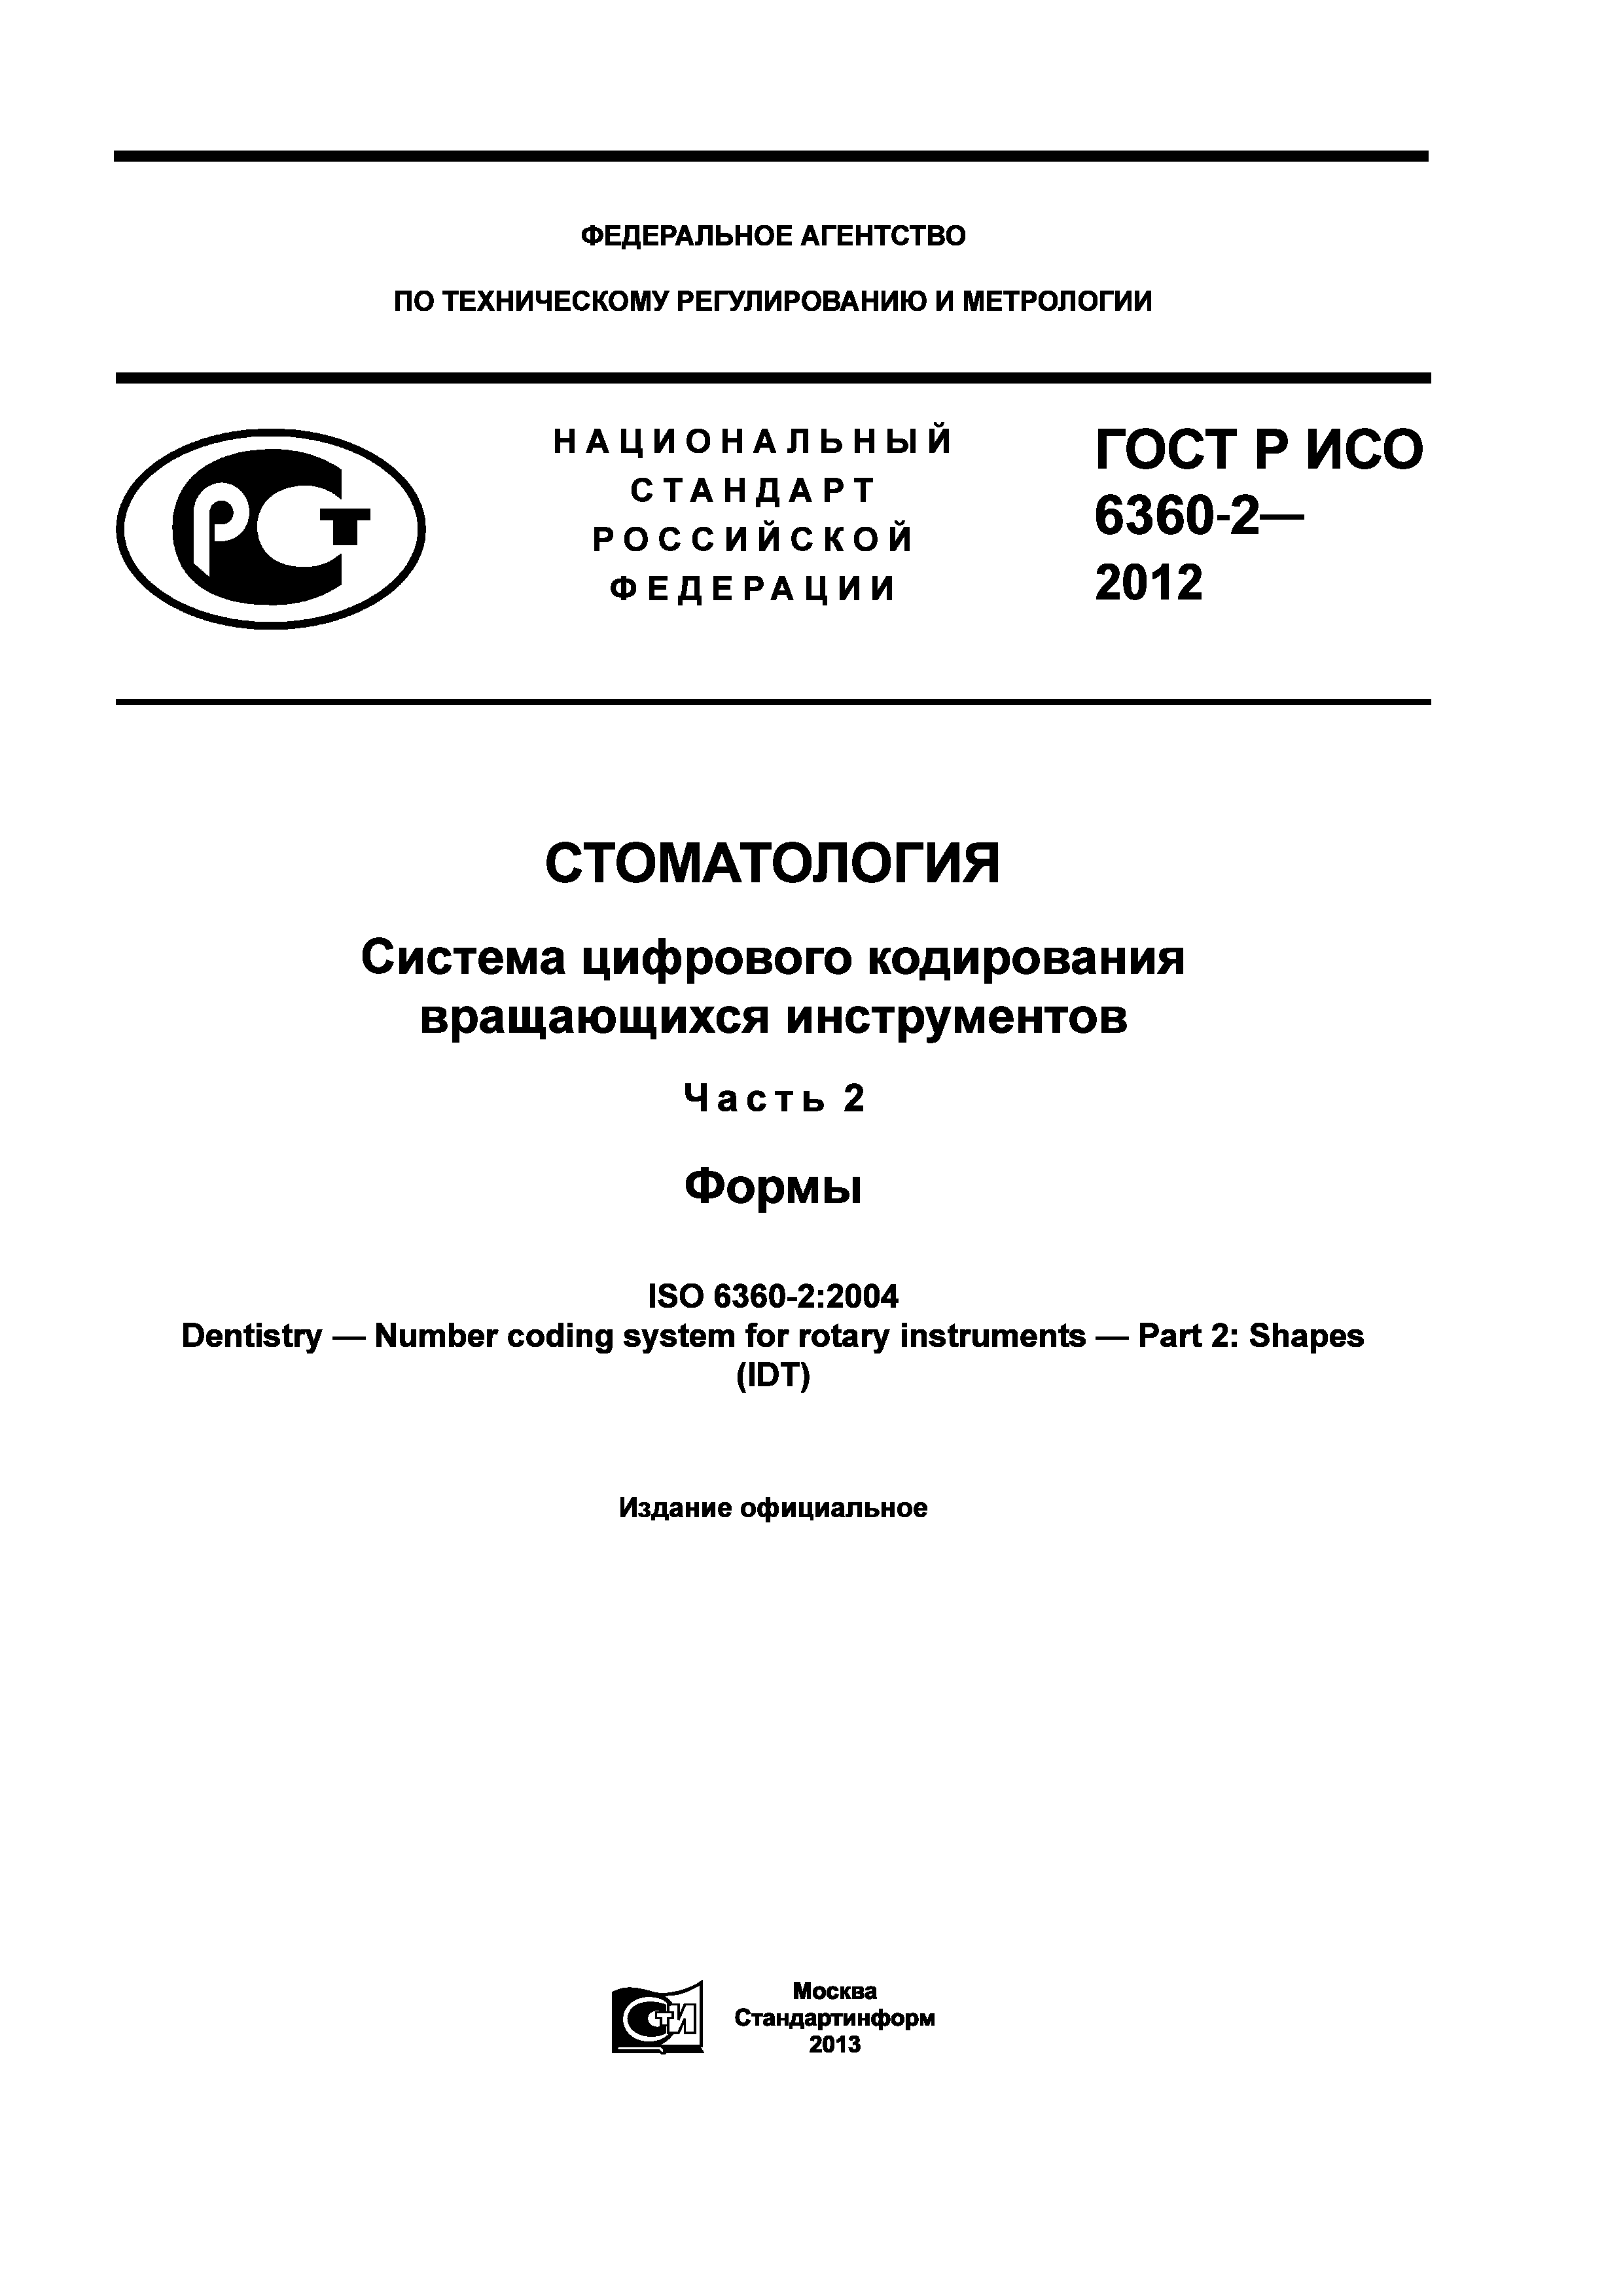 ГОСТ Р ИСО 6360-2-2012